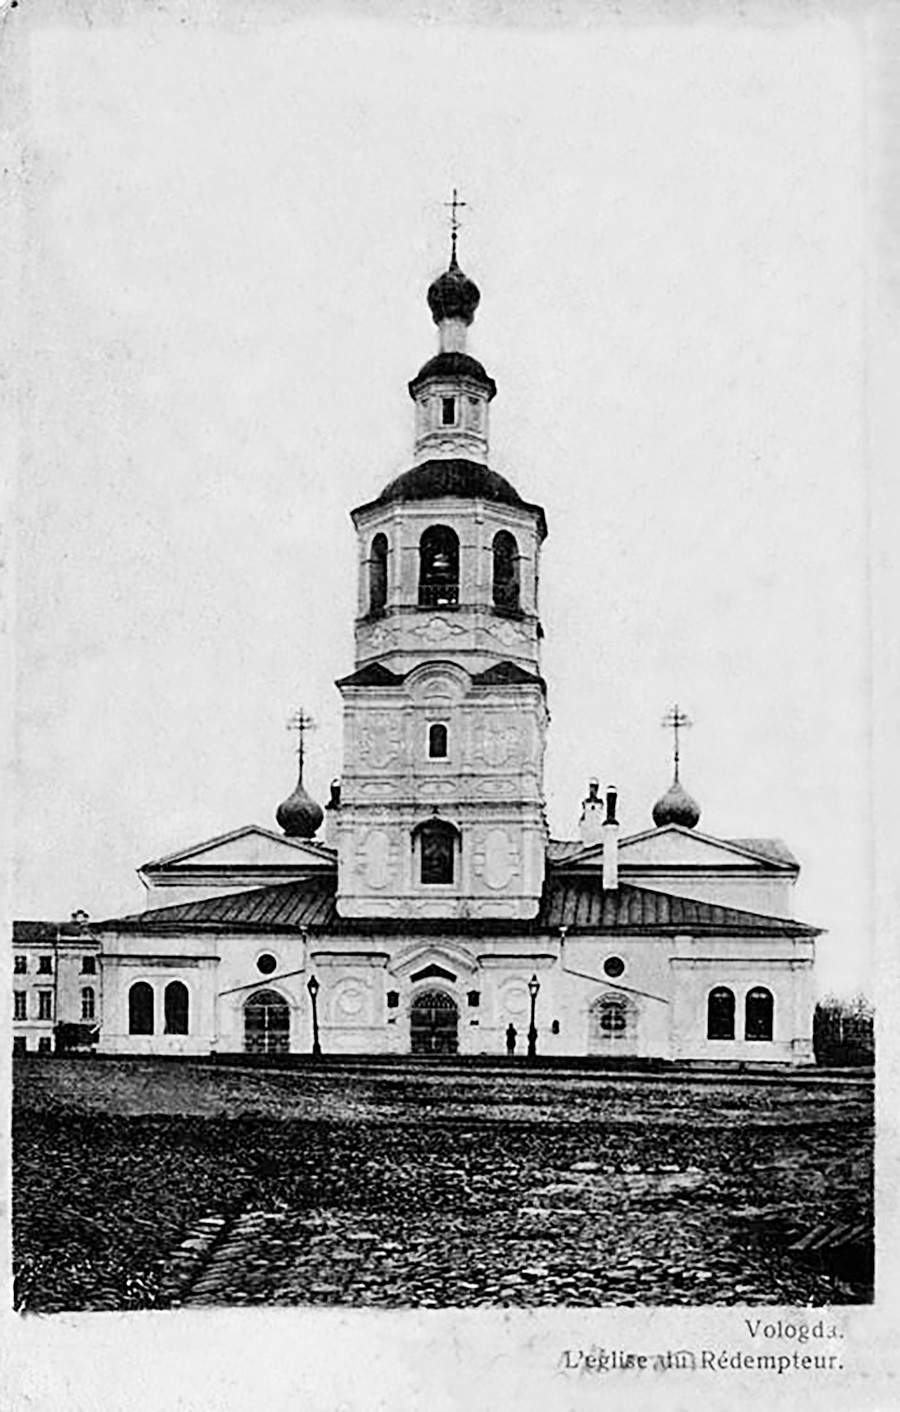 La chiesa in pietra del Nostro Salvatore di Vologda, distrutta nel 1972